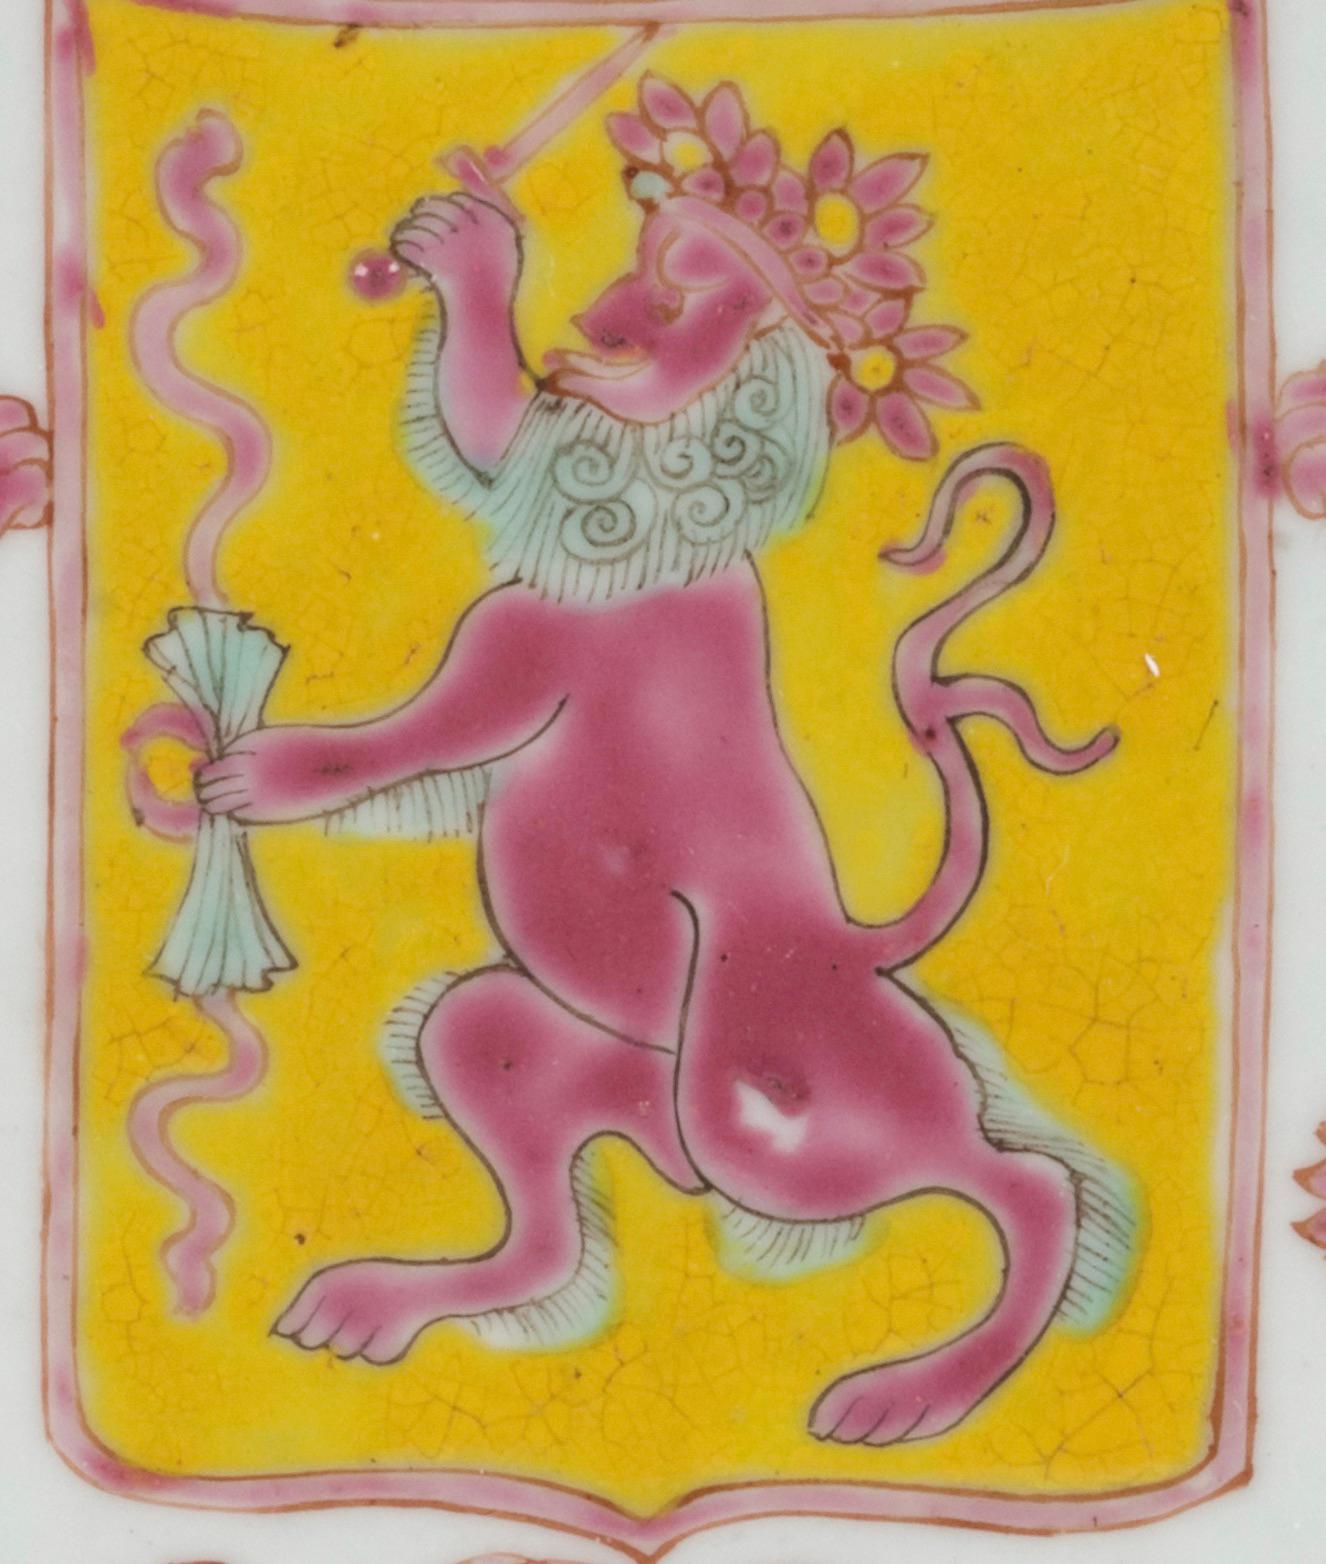 Schale aus chinesischem Exportporzellan der VOC (Niederländische Ostindien-Kompanie)
Kanton, Yongzheng-Periode, um 1730

Durchm. 23 cm

Das in rosafarbener, gelber und zart blaugrüner Emaille ausgeführte Design lehnt sich in fast allen Aspekten